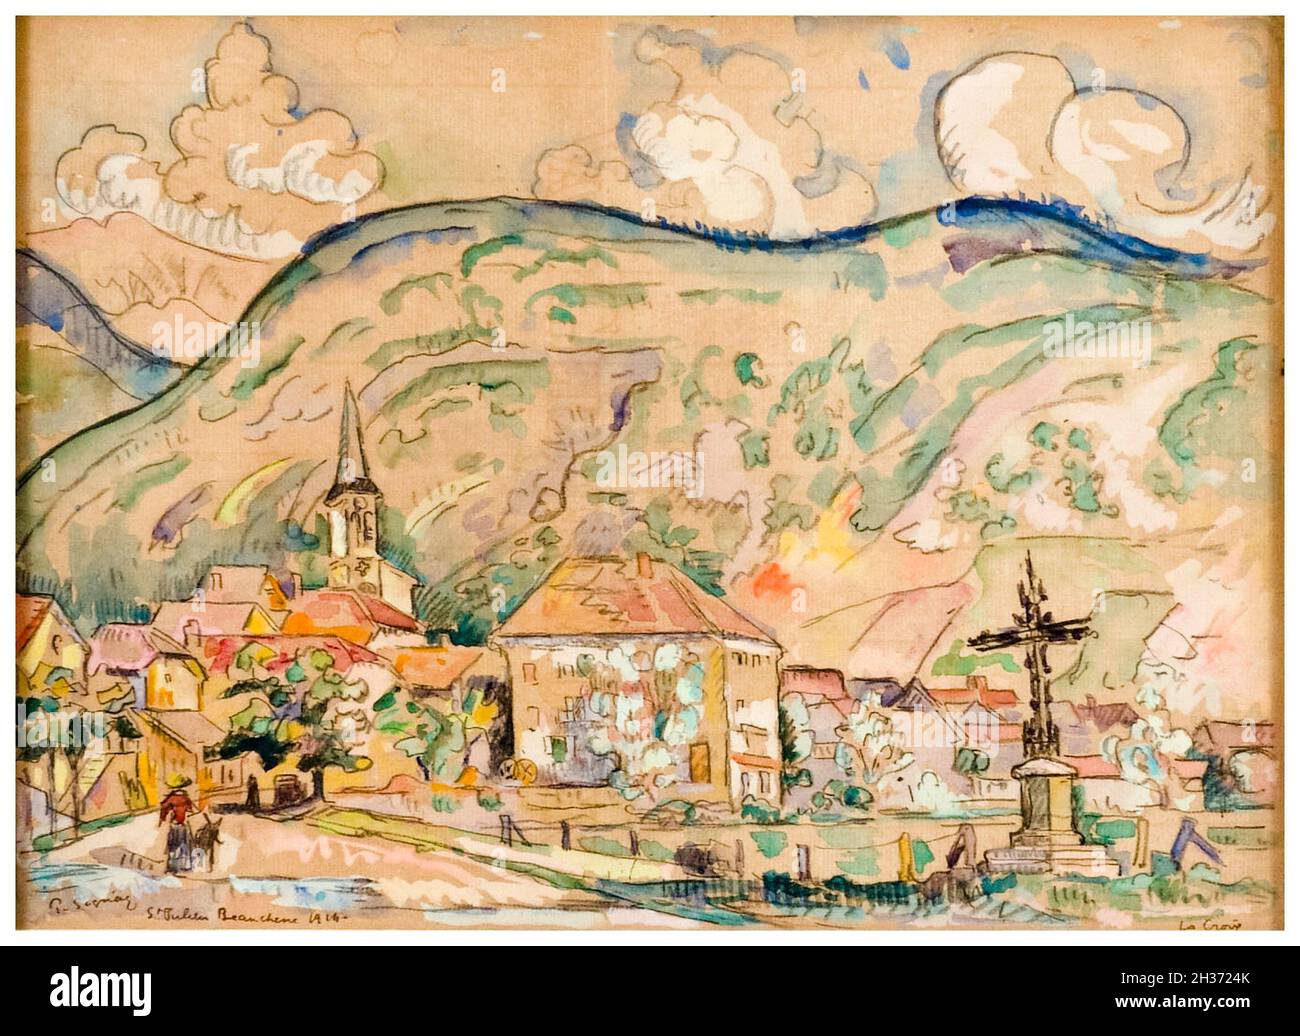 Paul Signac, St Julien en Beauchene, peinture de paysage, 1914 Banque D'Images